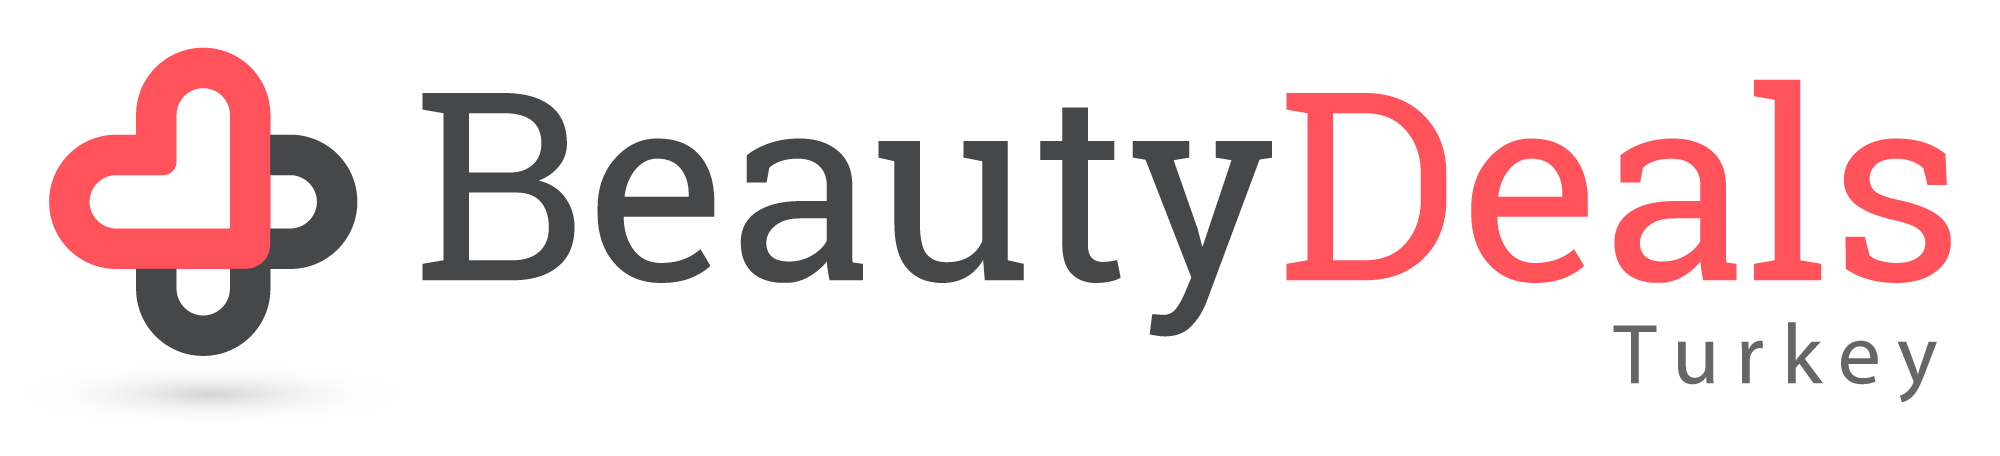 BeautyDealsTurkey - logo b